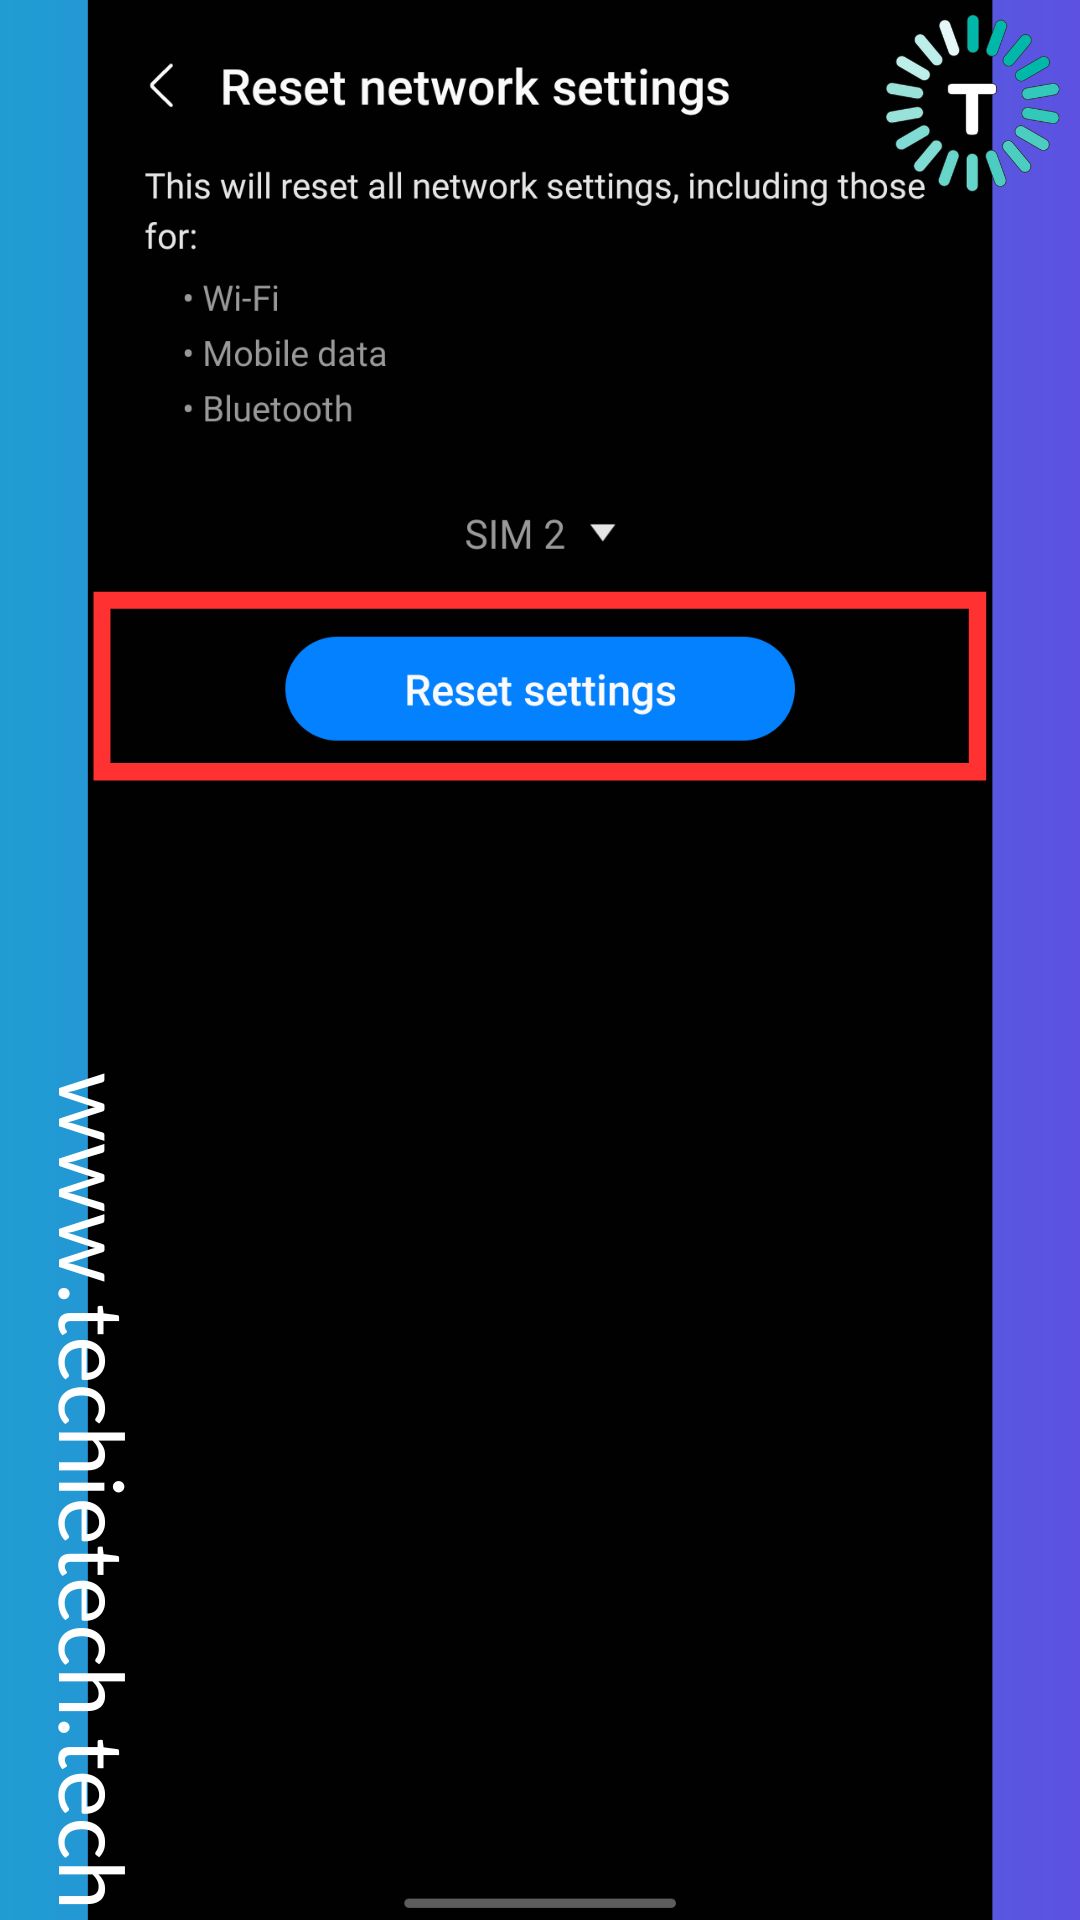 For SIM 2, again tap on Reset settings